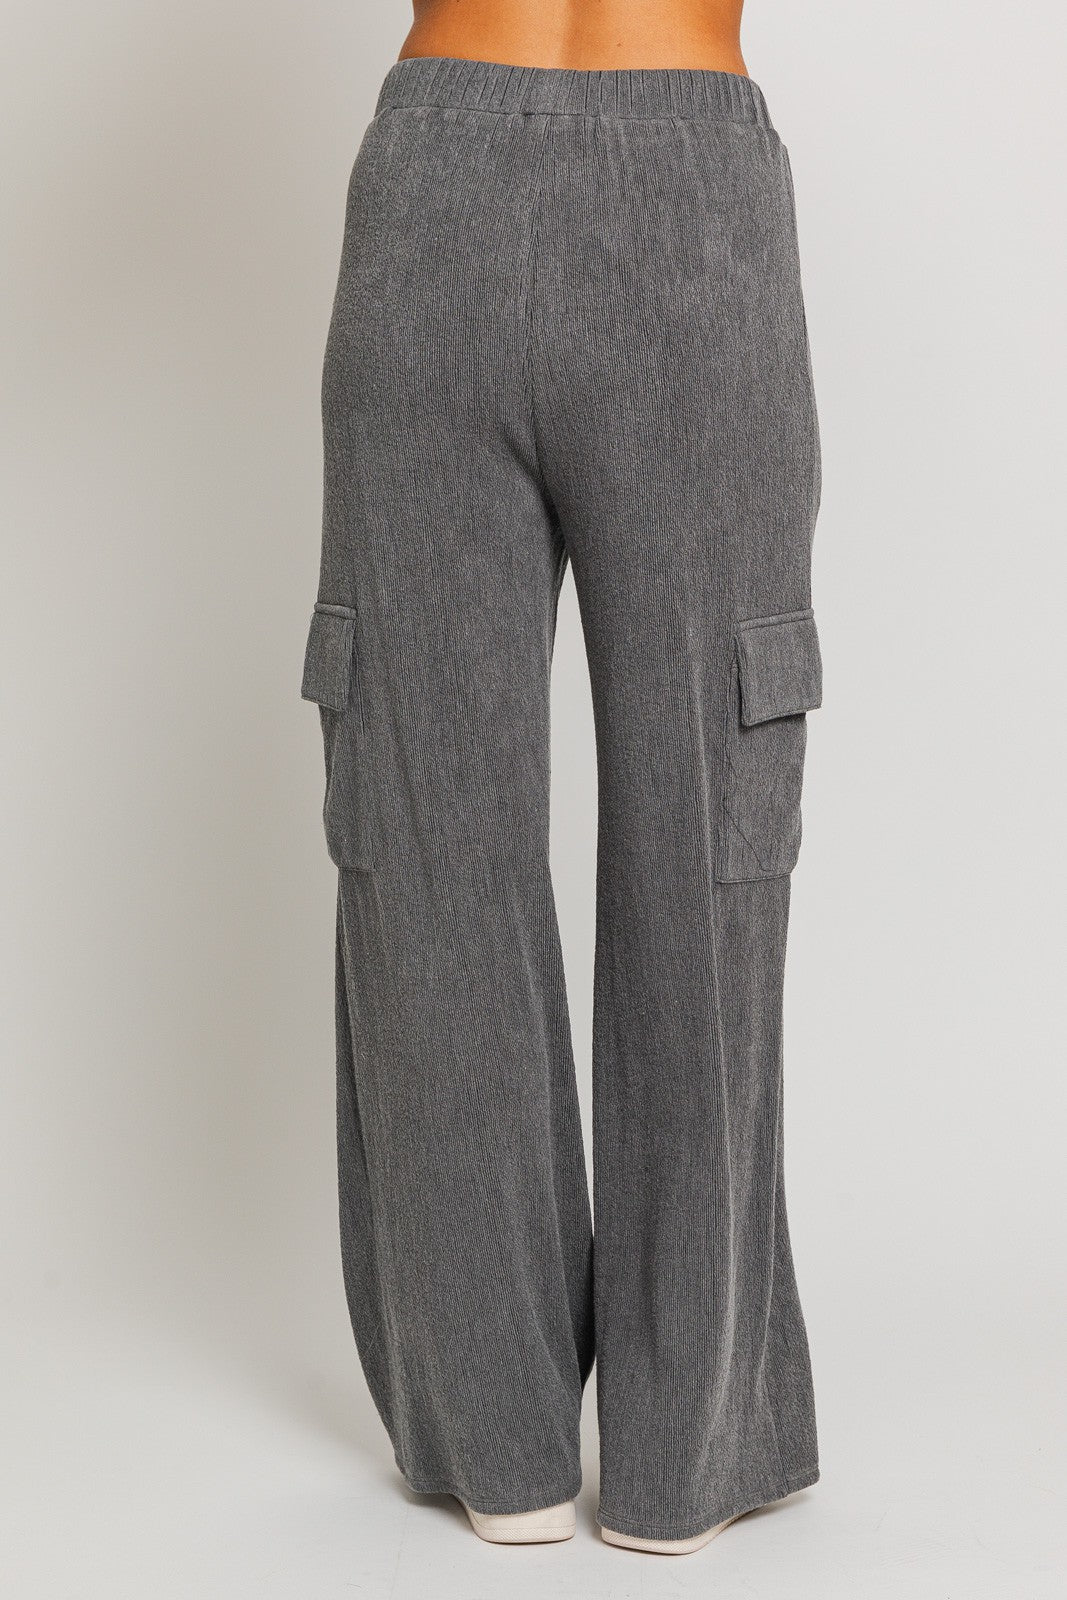 Drift Cargo Pant Charcoal, Pant Bottom by Le Lis | LIT Boutique